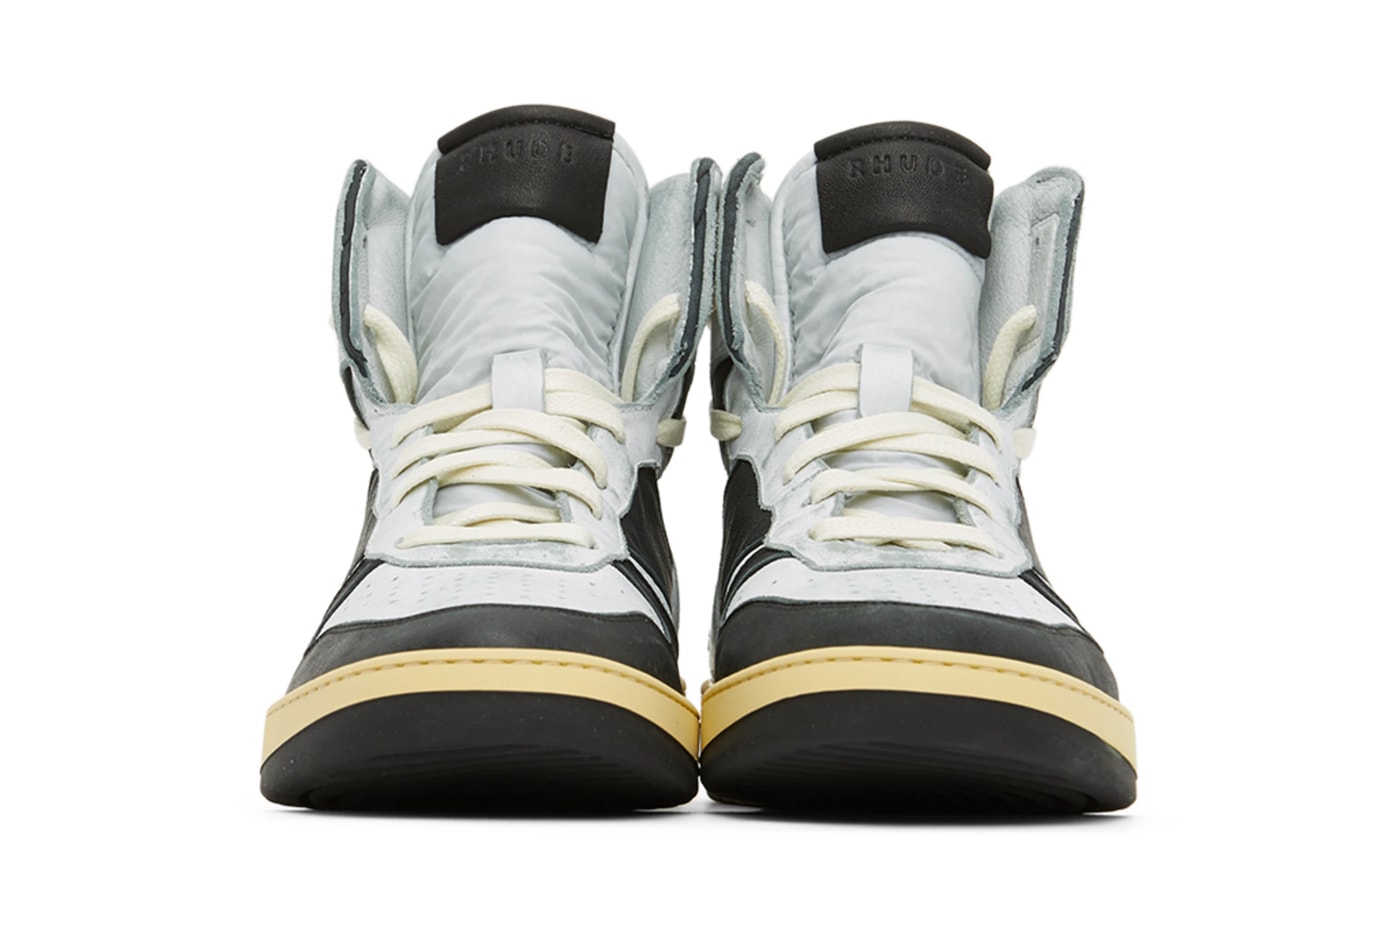 RHUDE Rhecess-Hi Hell Yeah Sneakers Black White Release